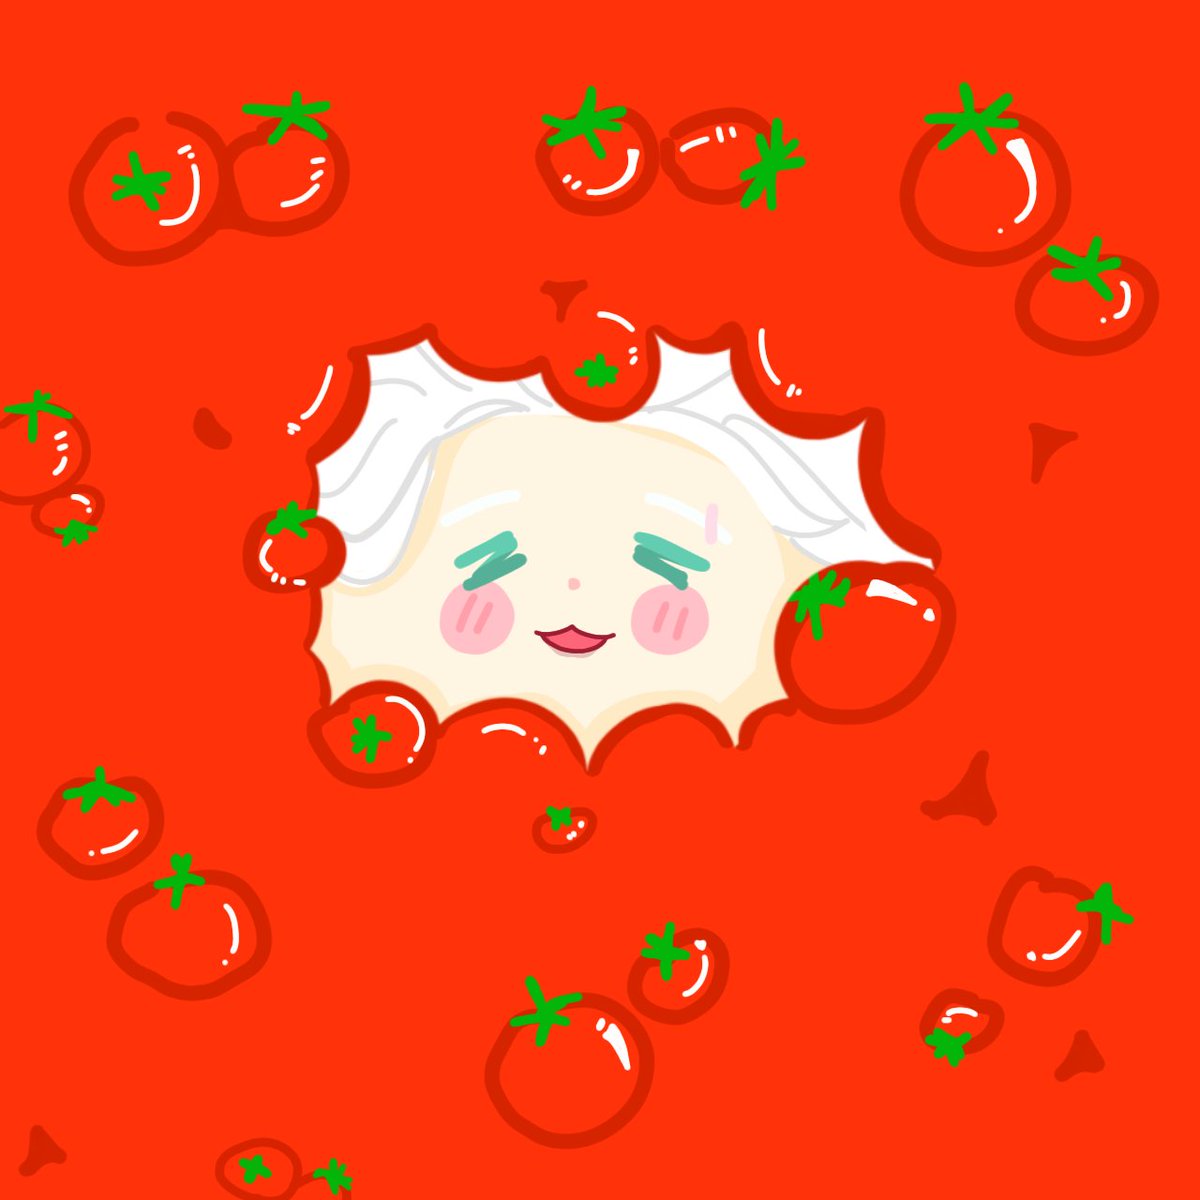 umemiya and his tomatosss 🤏🏻🍅 #ウィンブレ #WINDBREAKER